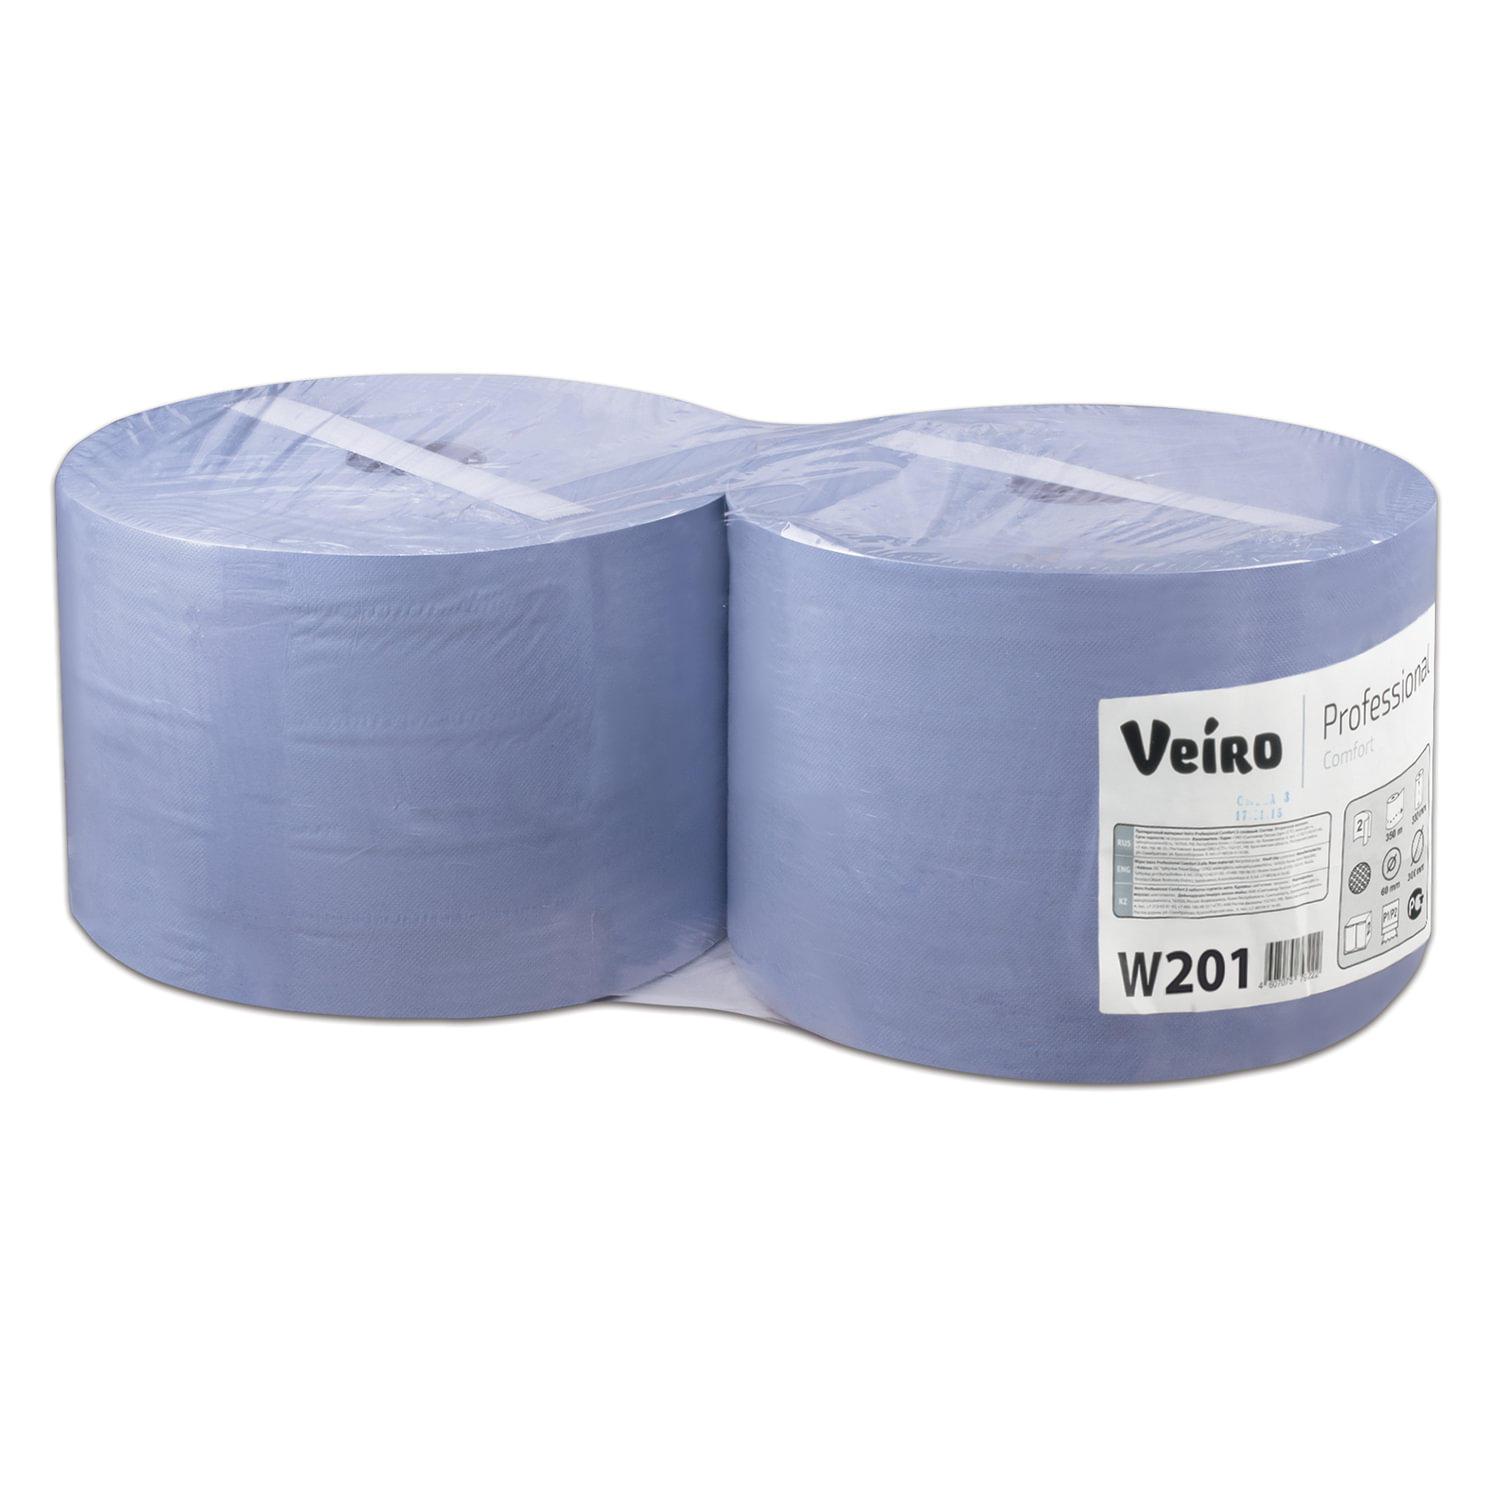 Бумага Veiro Система W1/P1,P2 2шт W201 1000 листов масштабно координатная бумага 60 гр м² 87 см 20 м голубой